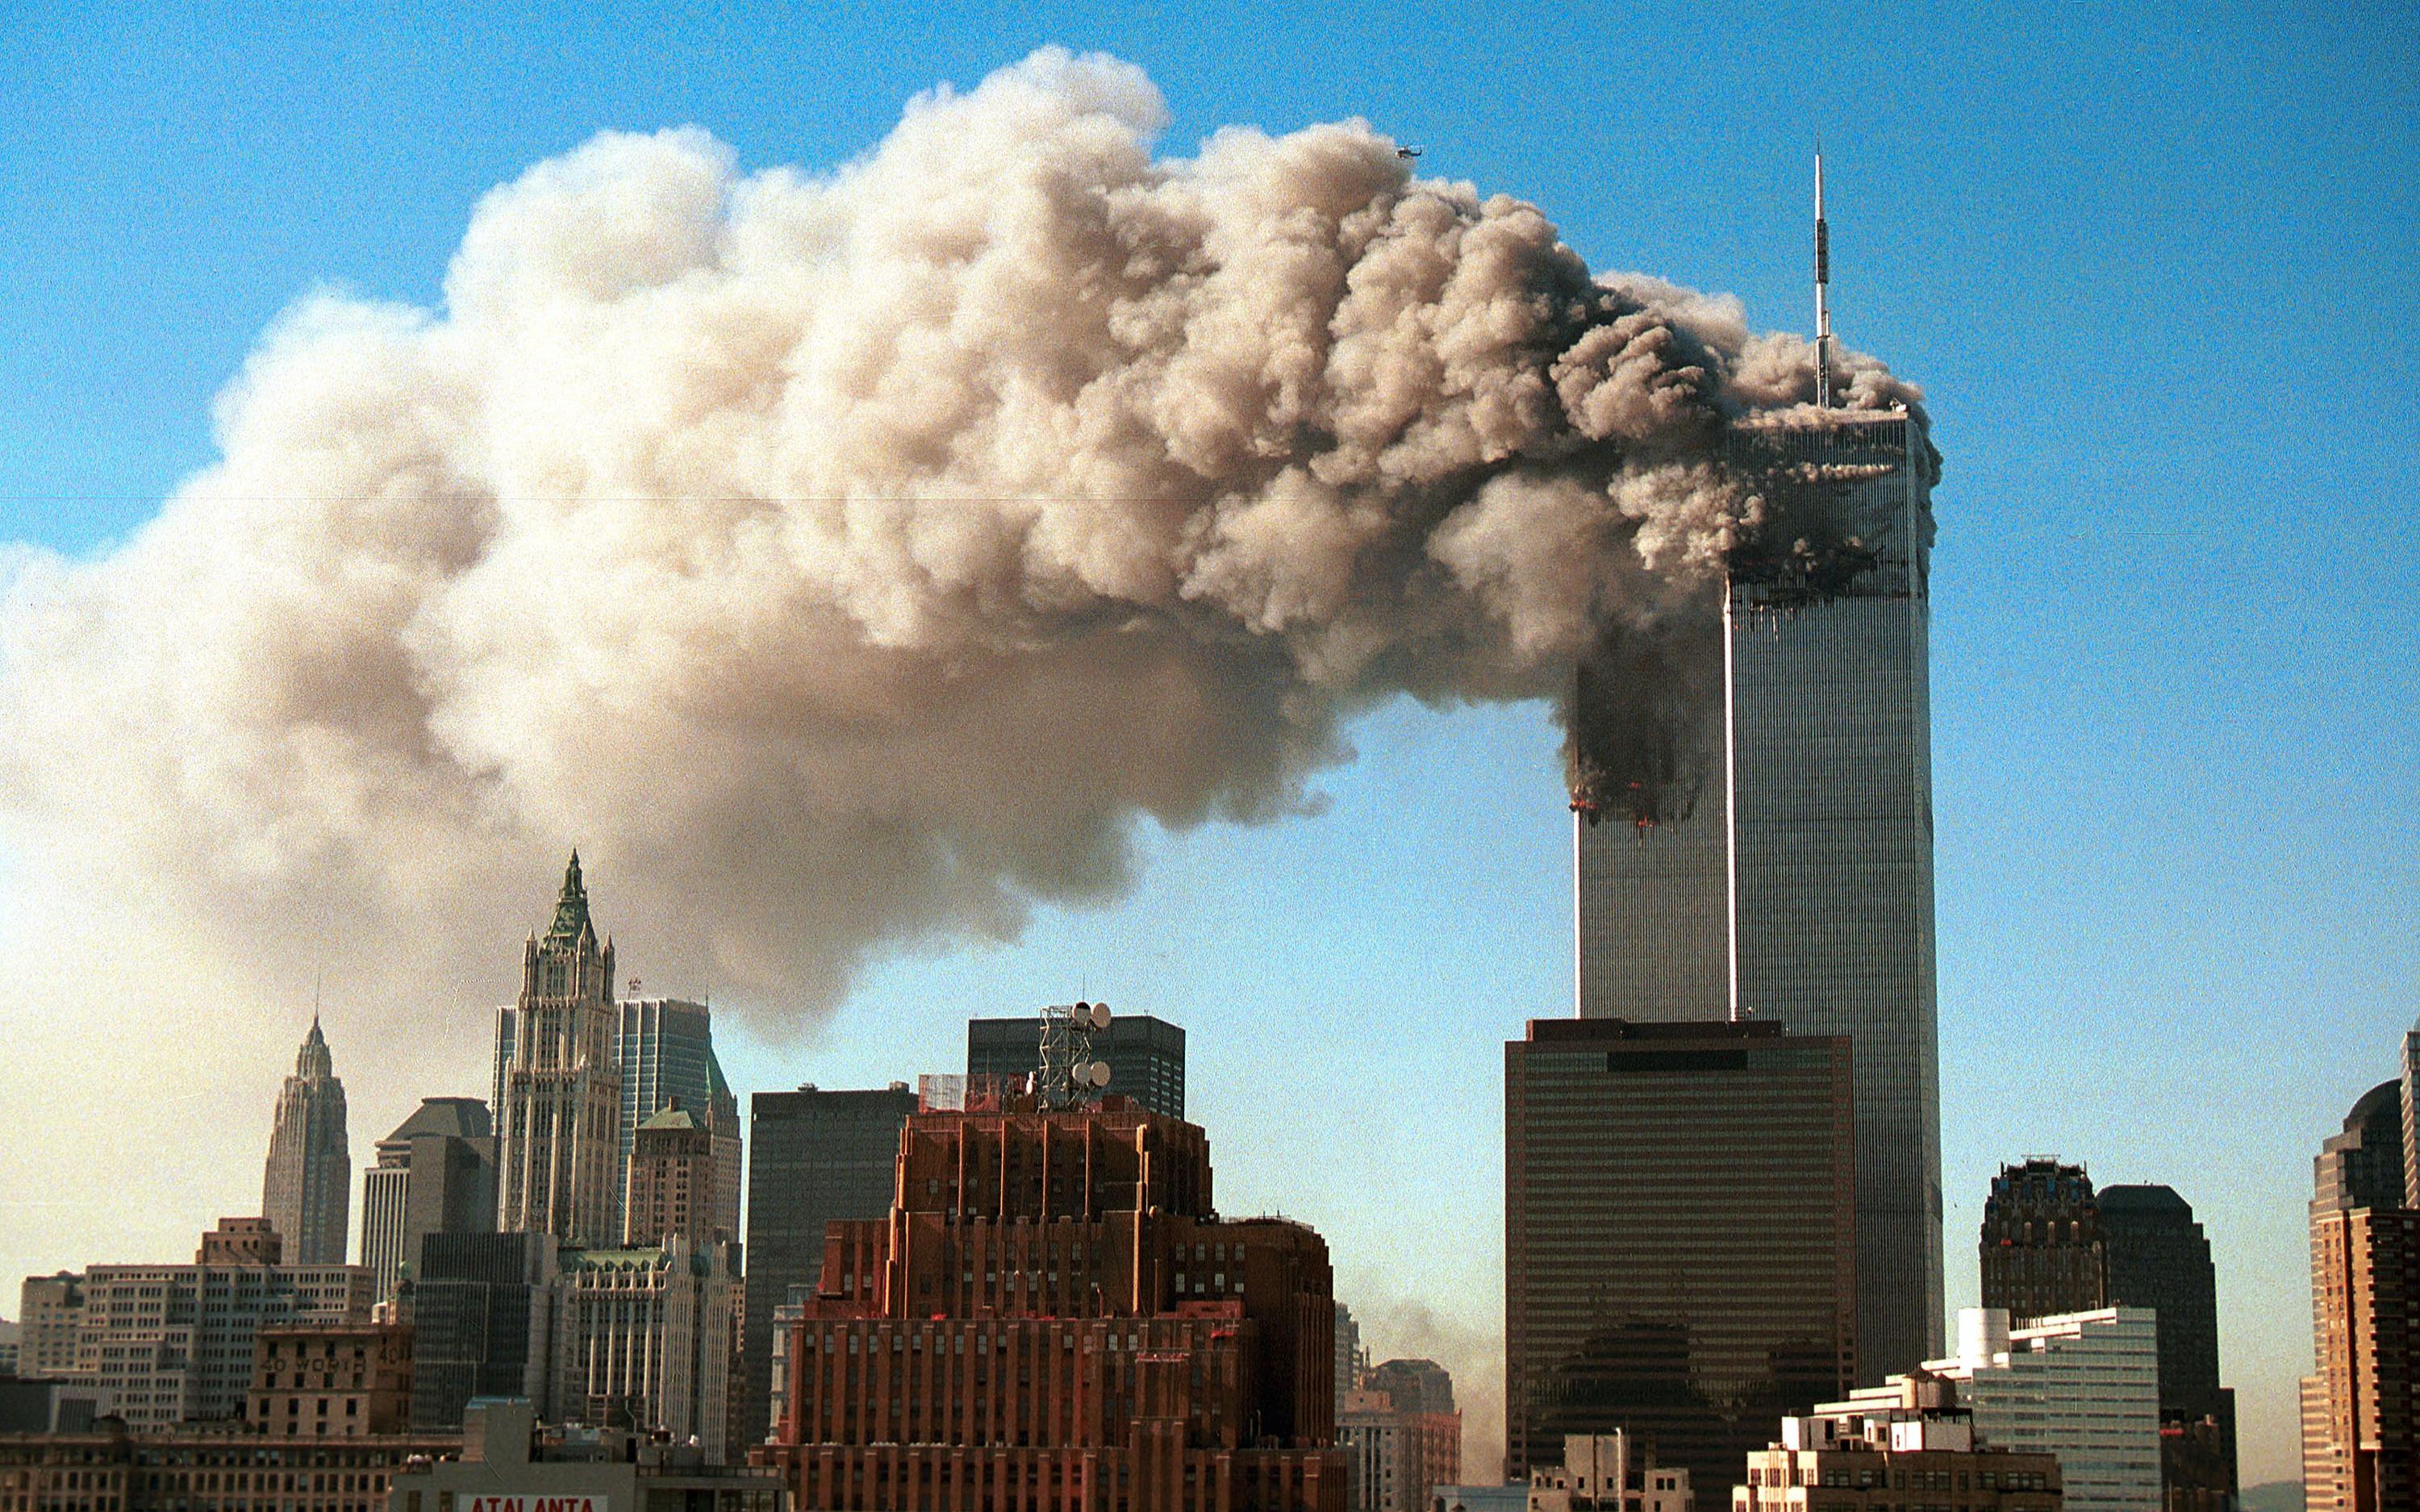 Сколько этажей было в башнях близнецах. Башни-Близнецы 11 сентября 2001. ВТЦ Нью-Йорк 2001. Всемирный торговый центр башни Близнецы 11 сентября. Аль Каида 11 сентября 2001.